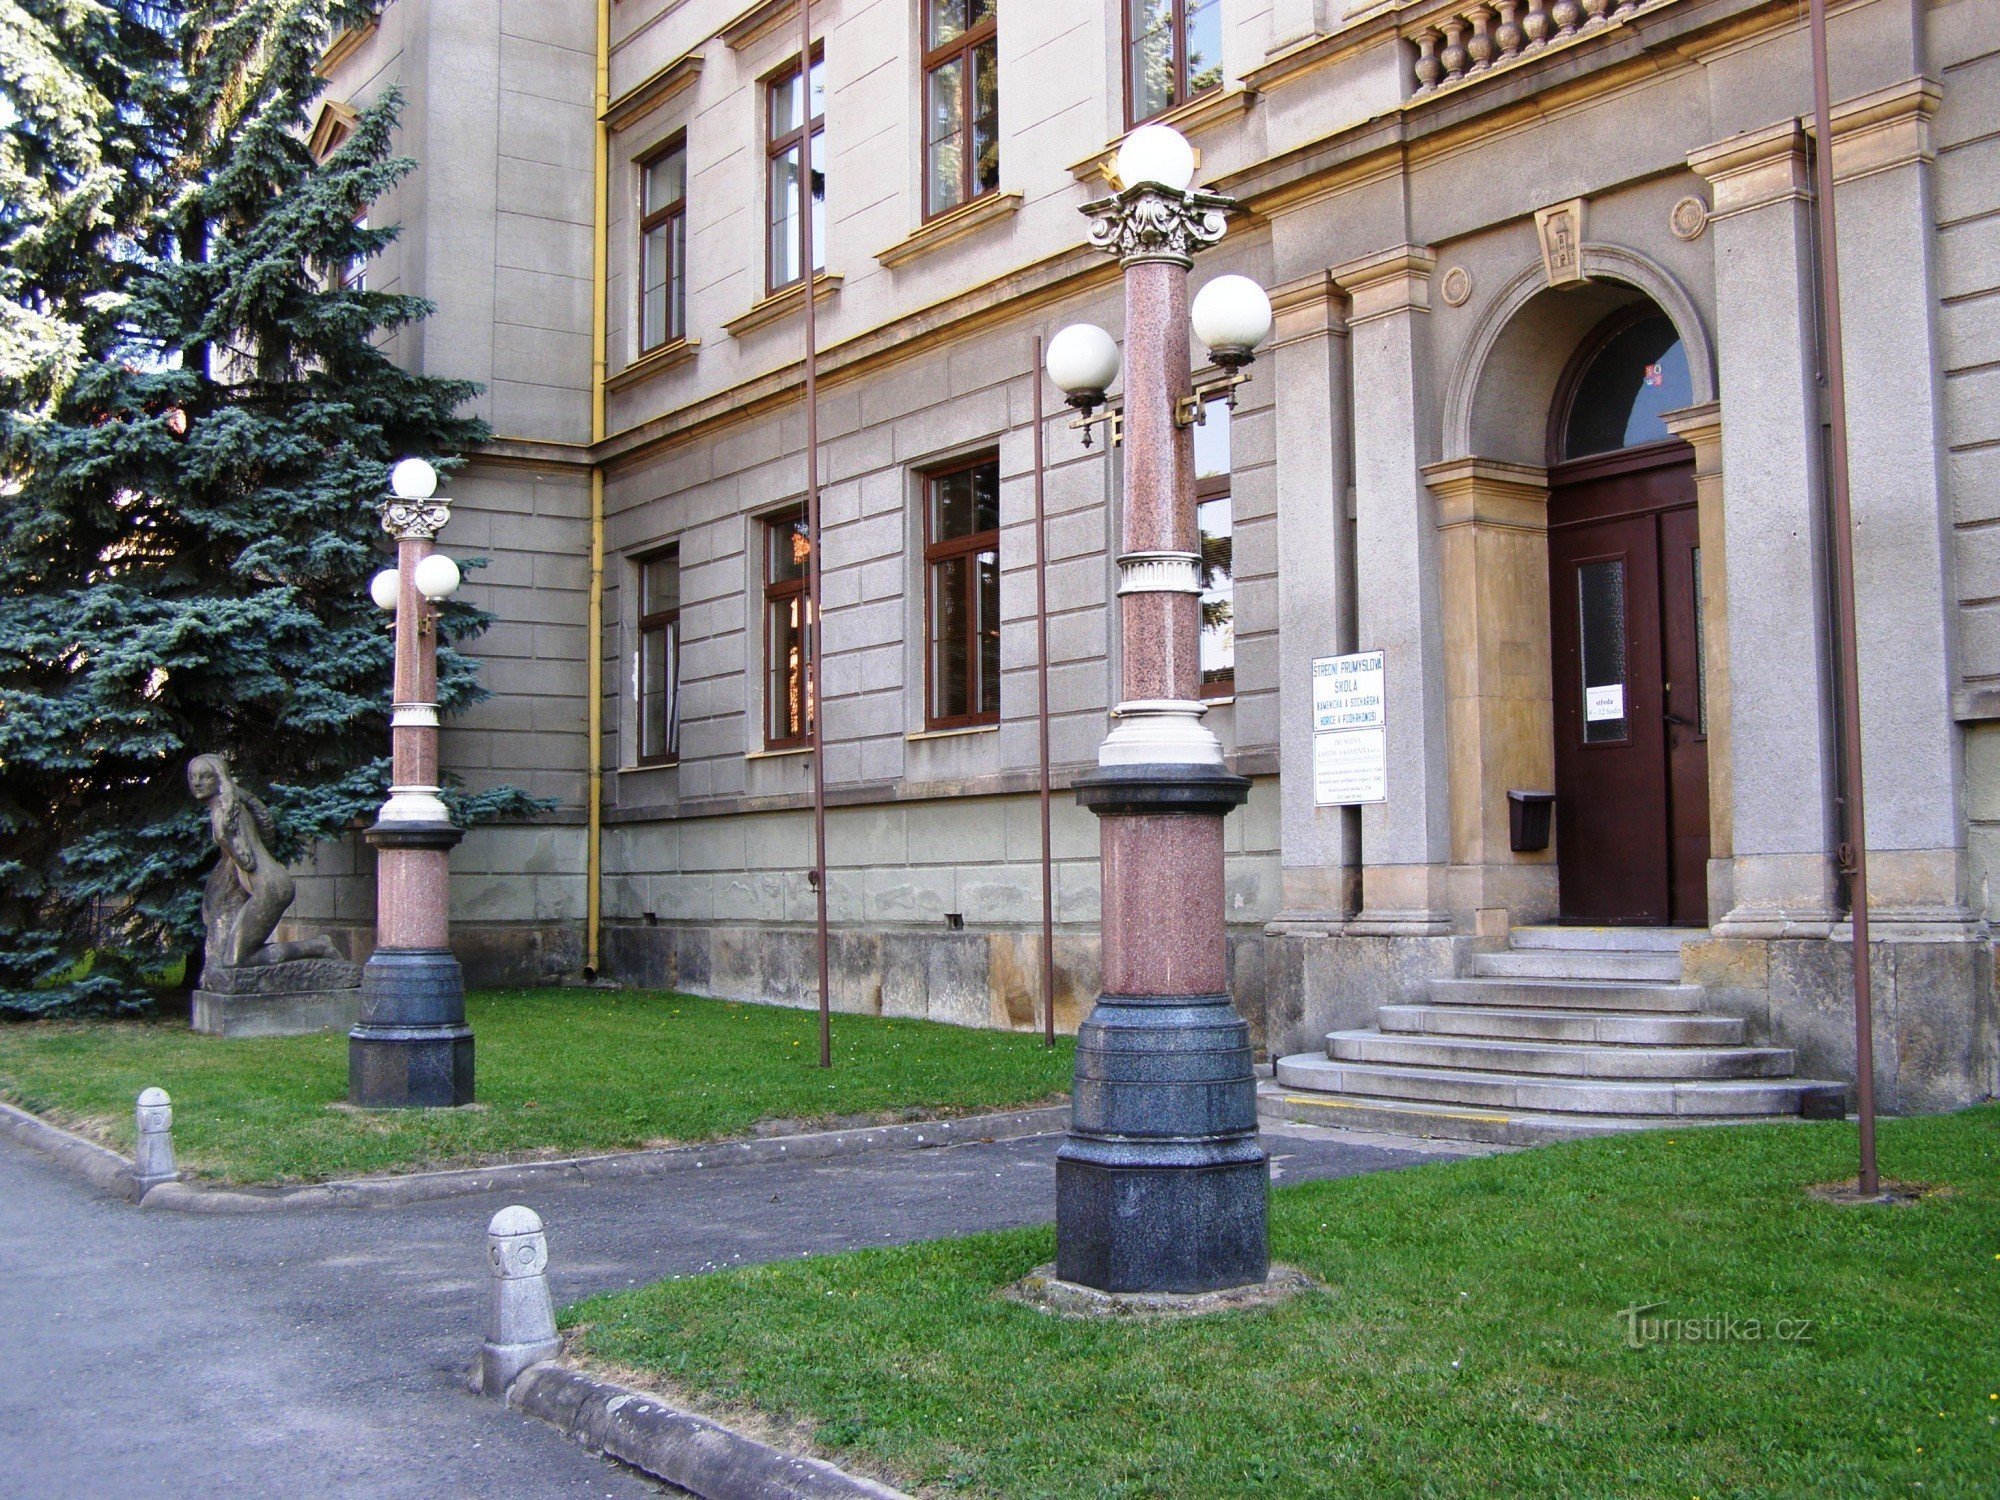 Hořice - école de sculpture et tailleur de pierre